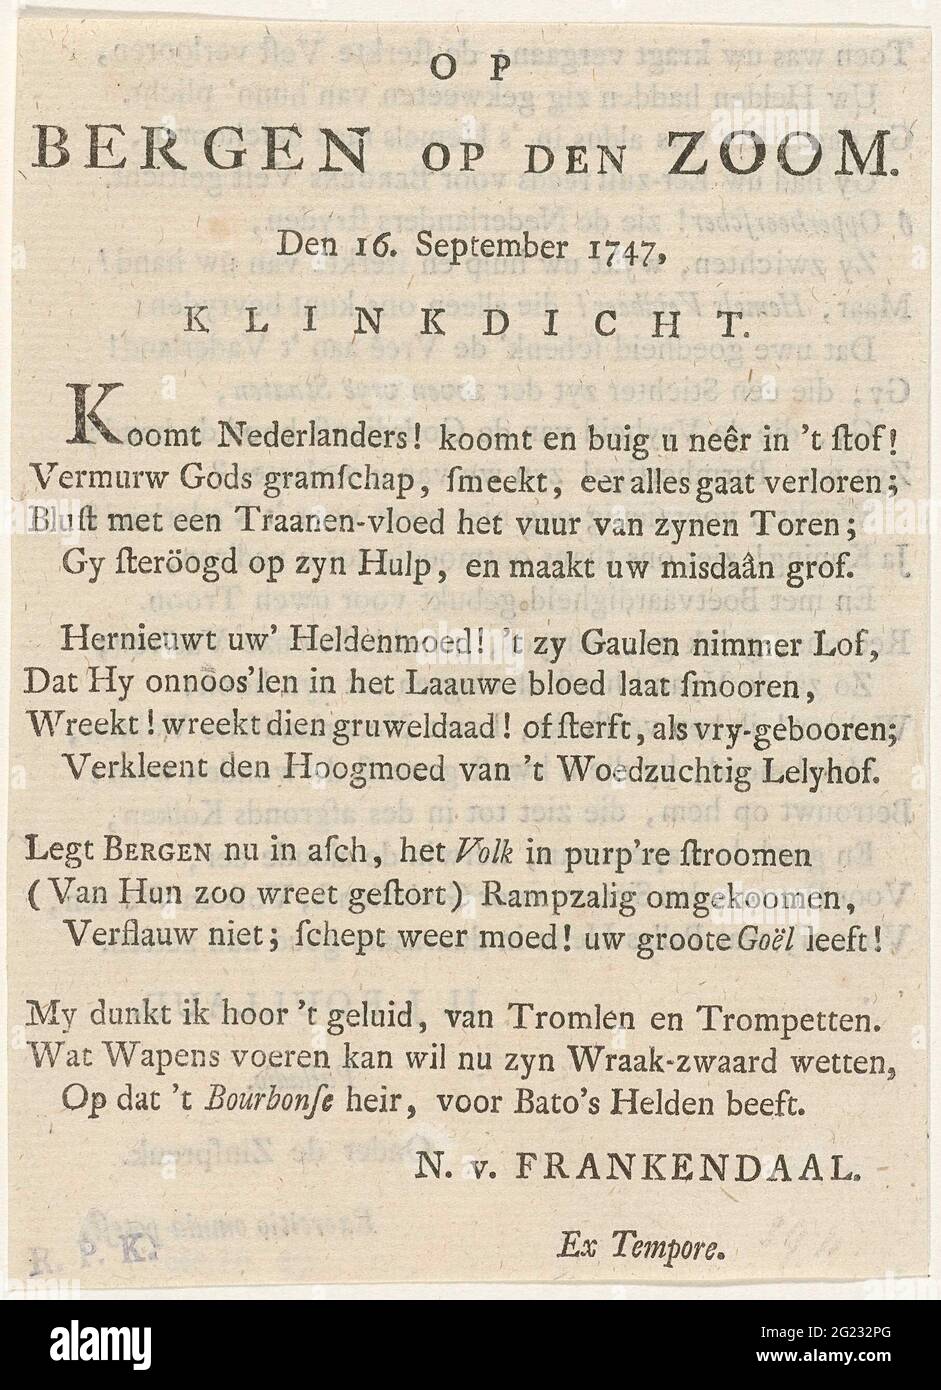 Frisch im Herbst von Bergen op Zoom, 1747; auf Bergen am Saum. Auf 16. September 1747. Textblatt mit einer Niete über den Fall von Bergen op Zoom von den Franzosen im Juli-September 1747. Blatt aus einem Buch entnommen und beidseitig bedruckt. Stockfoto